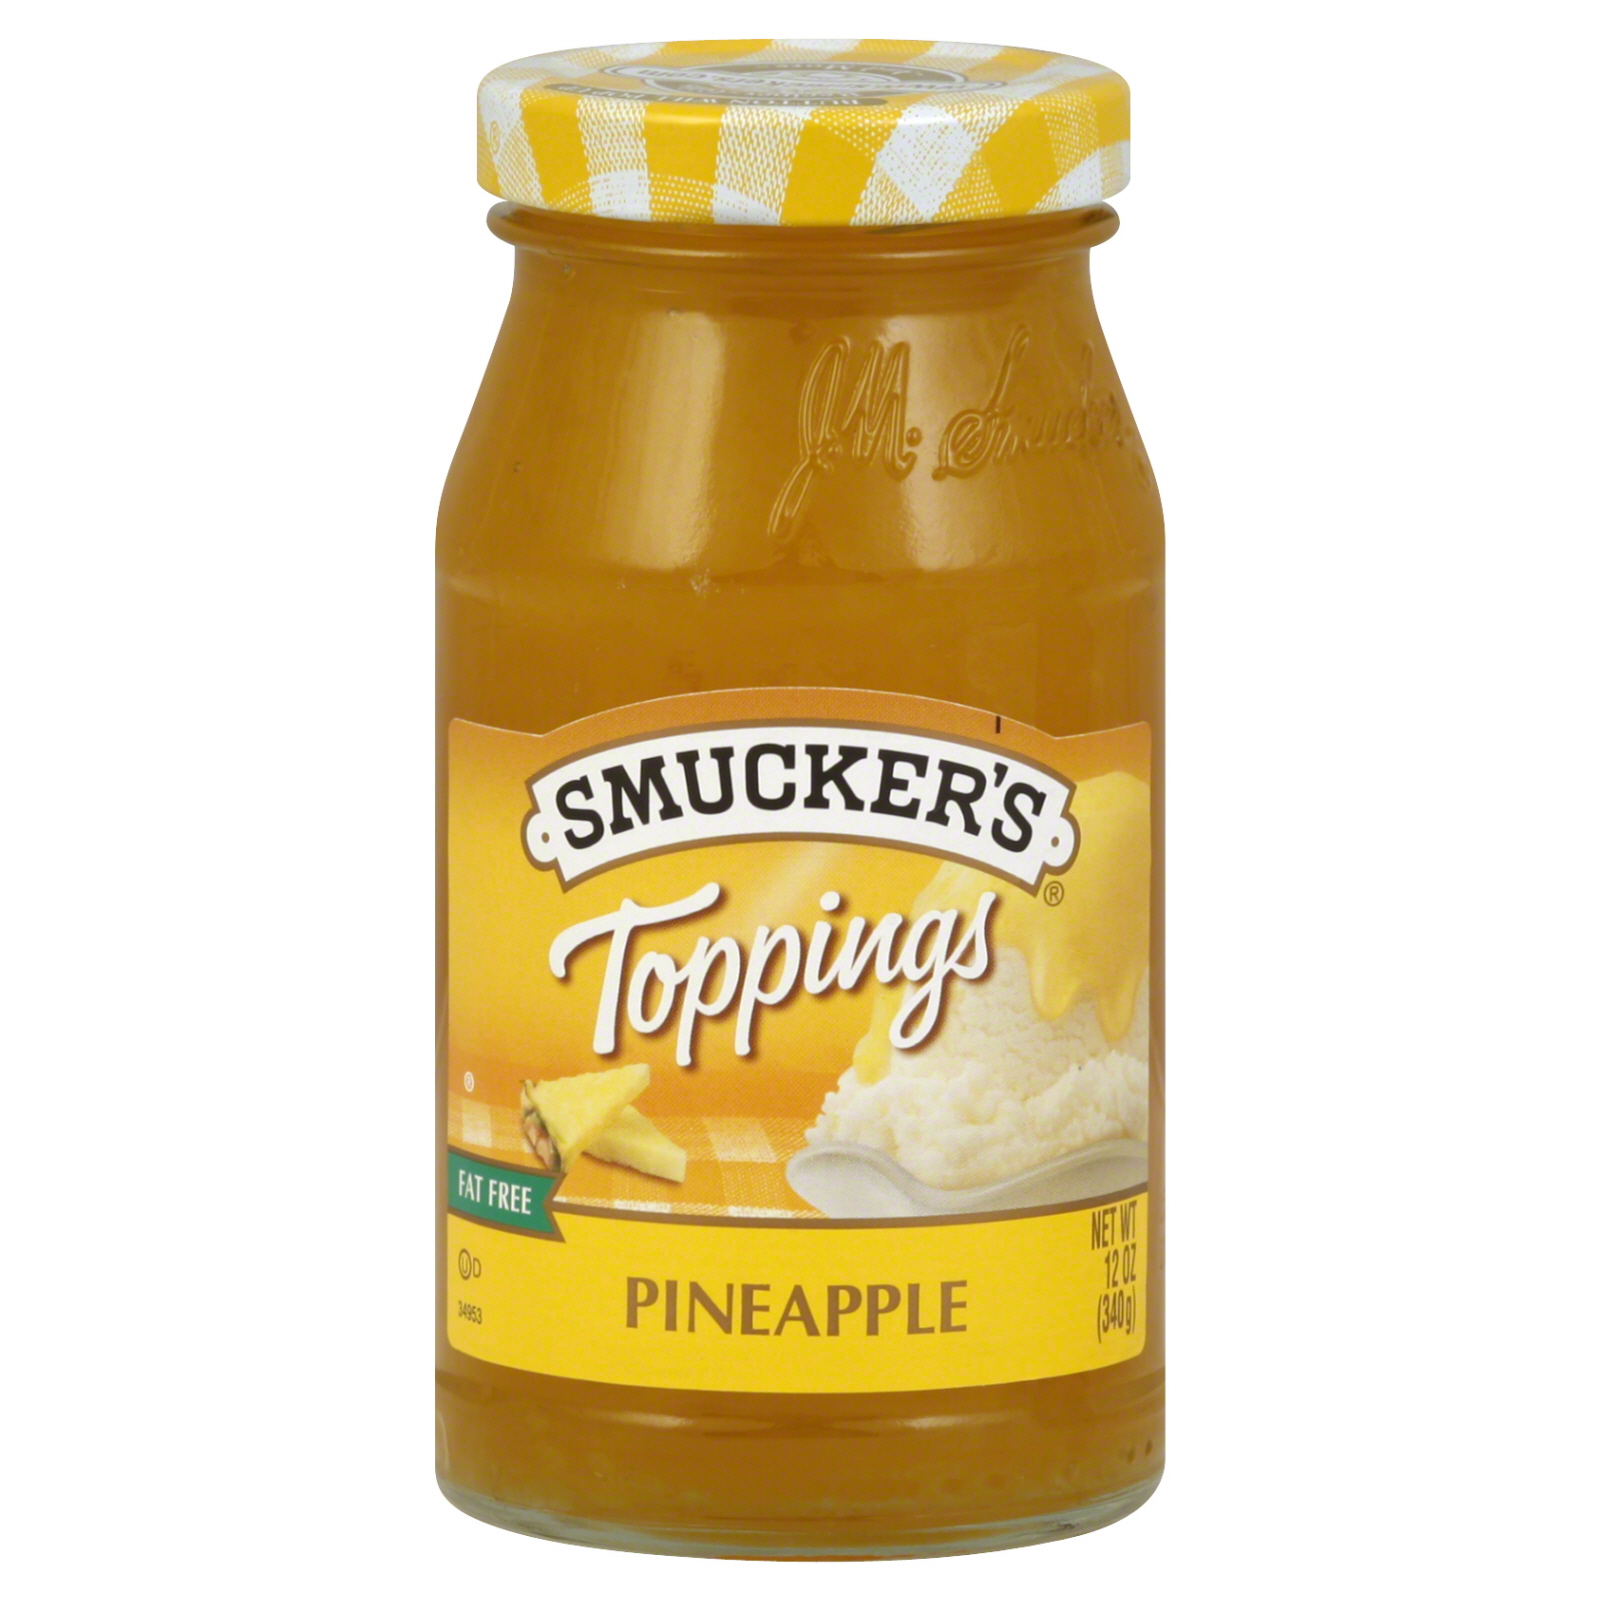 Smucker's Toppings, Pineapple, 12 oz (340 g)